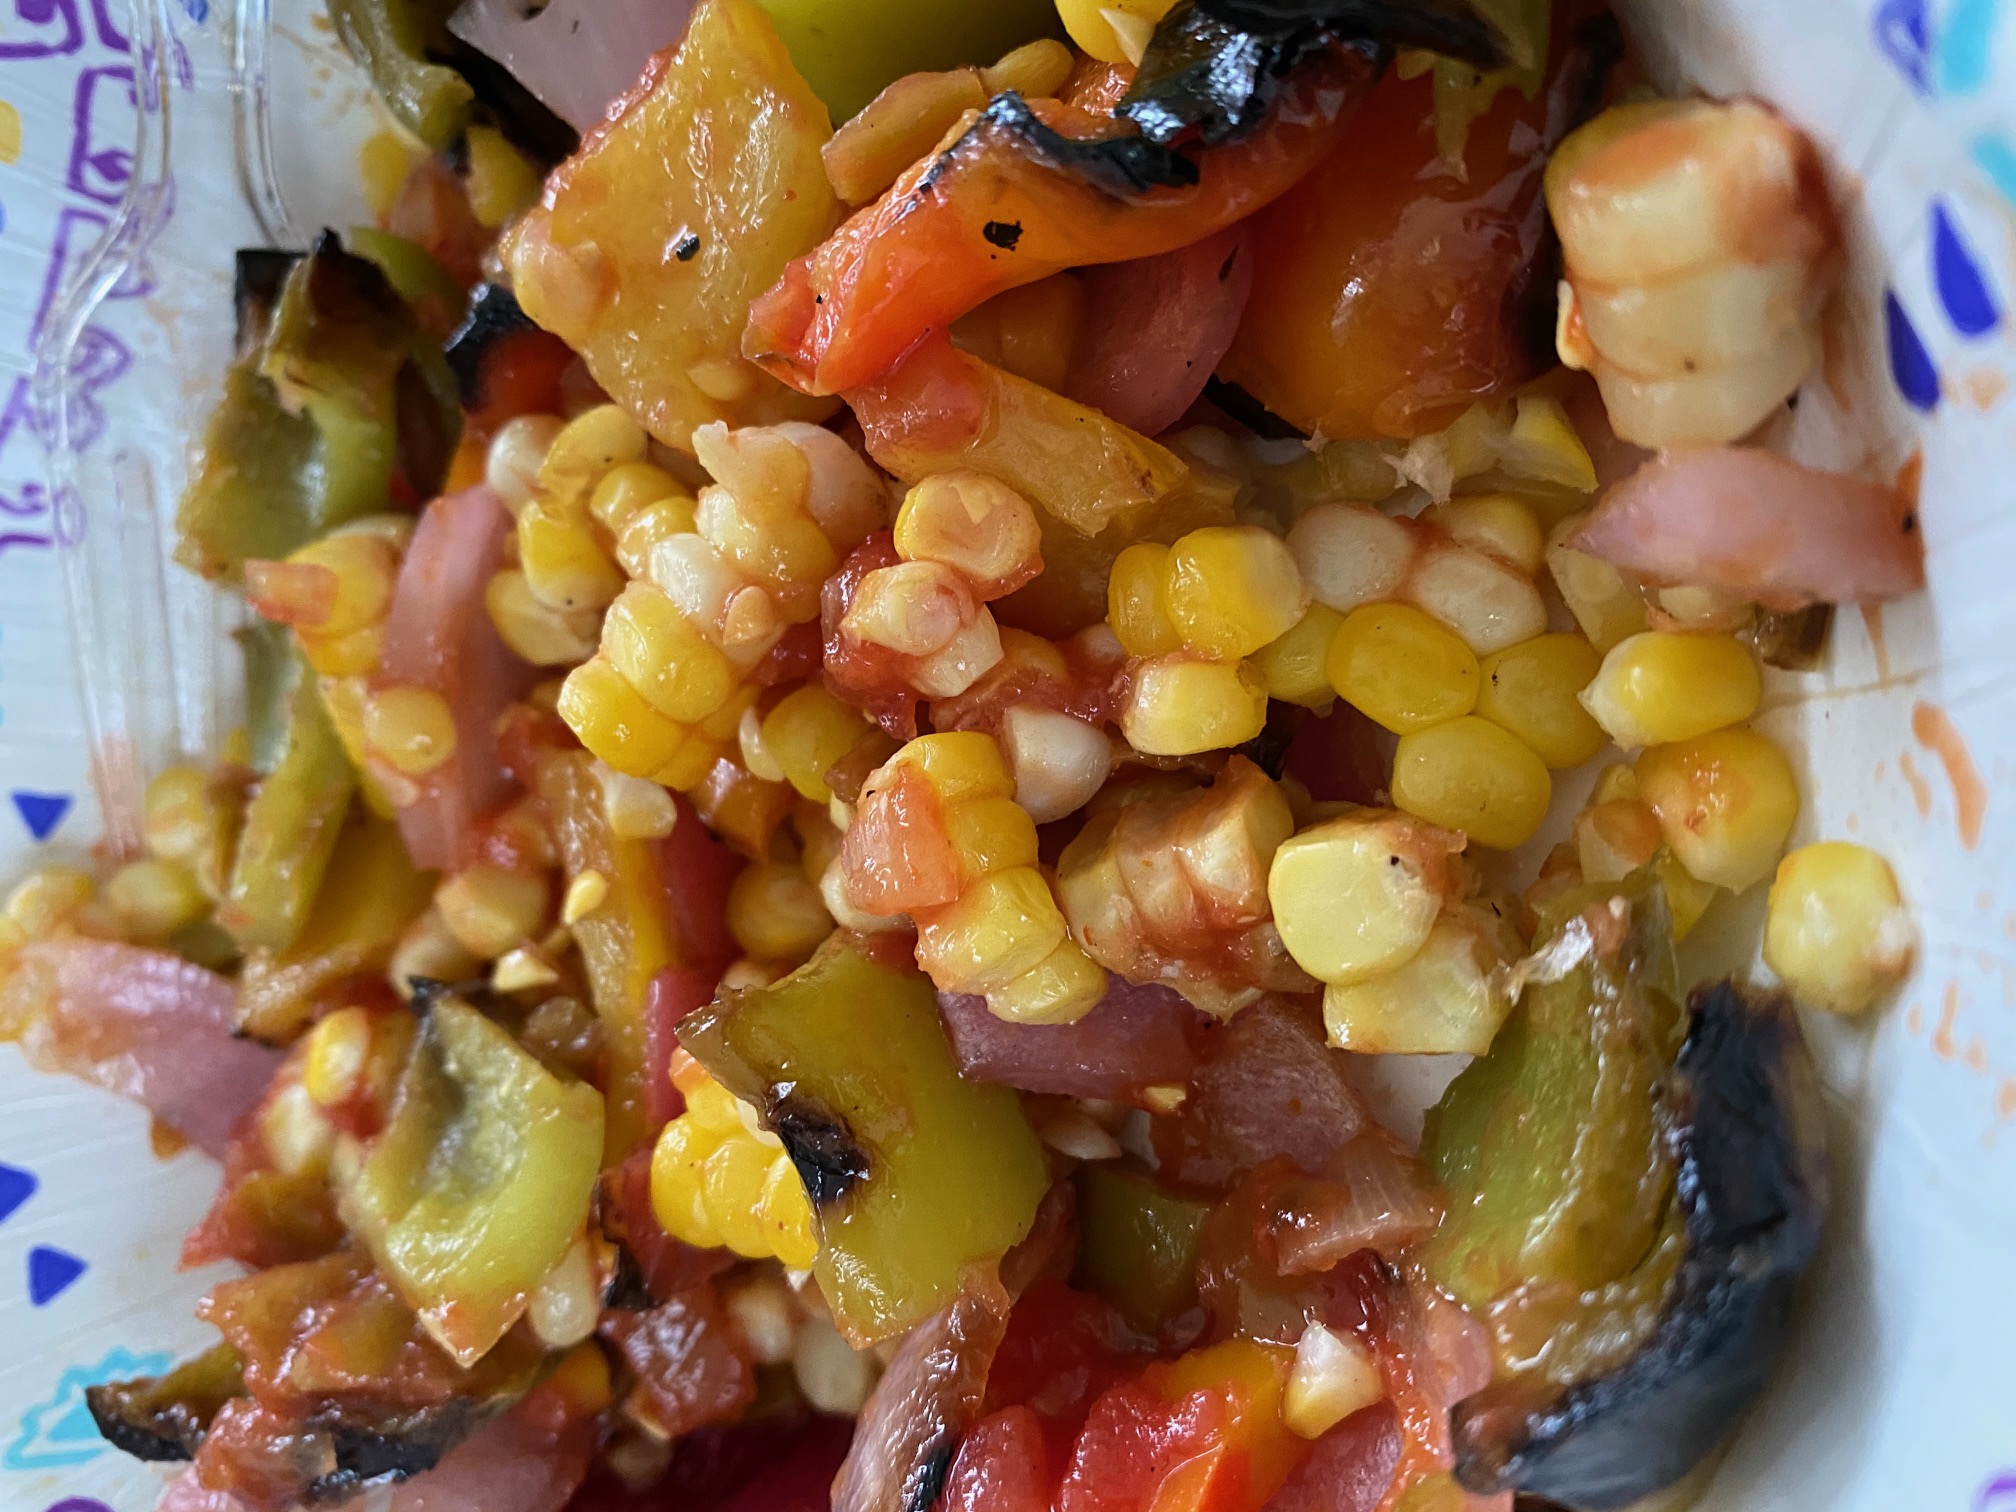 Leftover Grilled Vegetables With Salsa